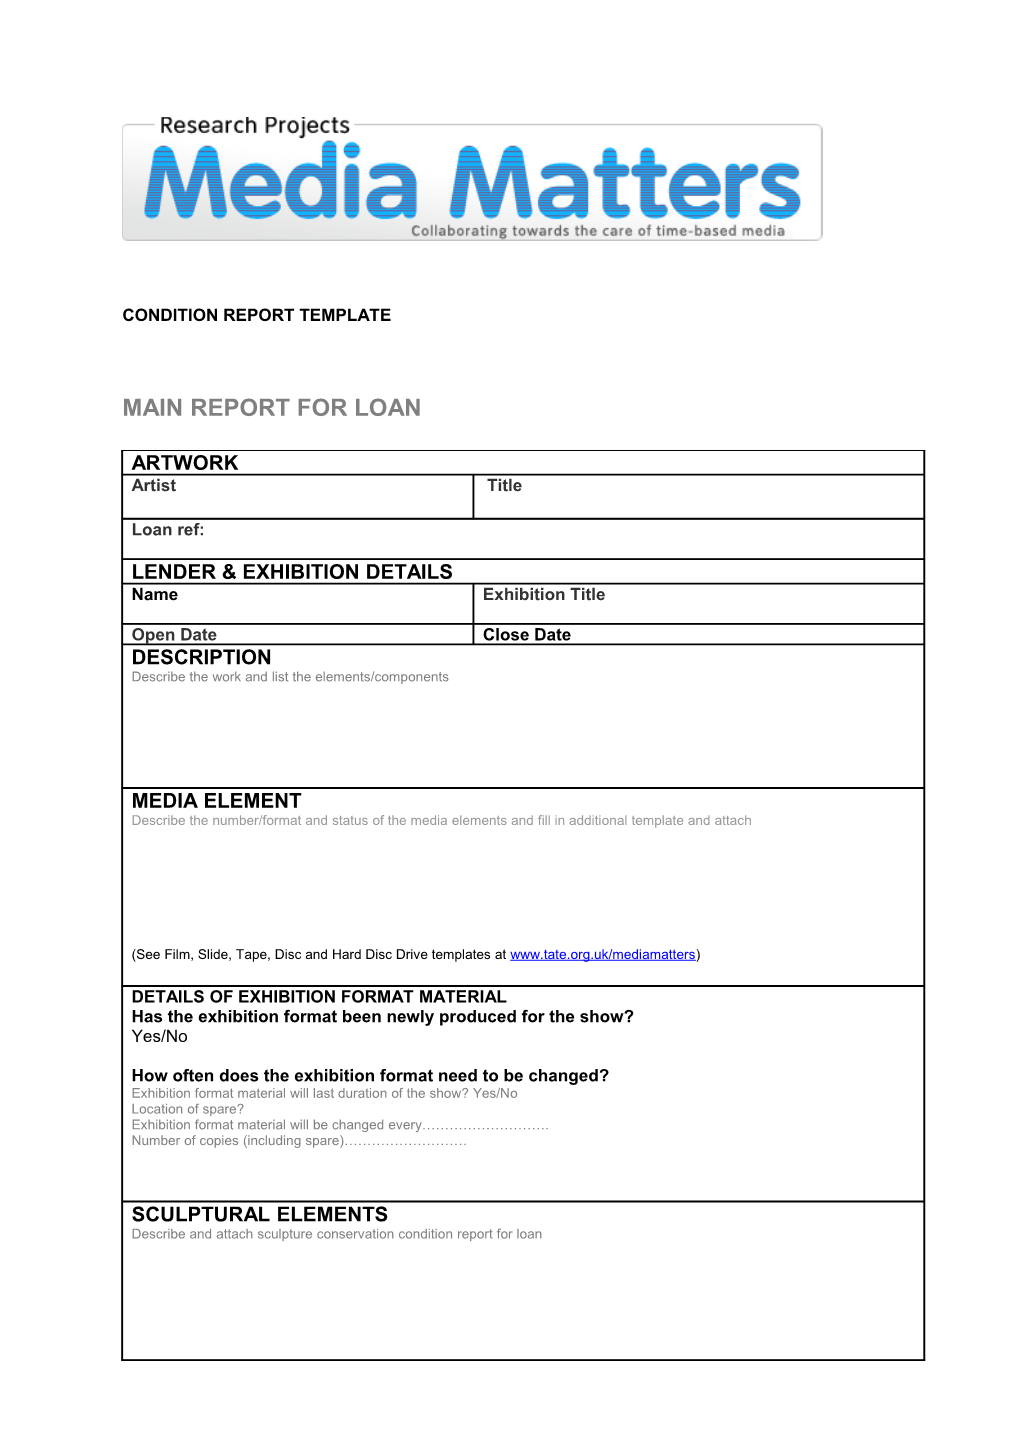 Main Report for Loan